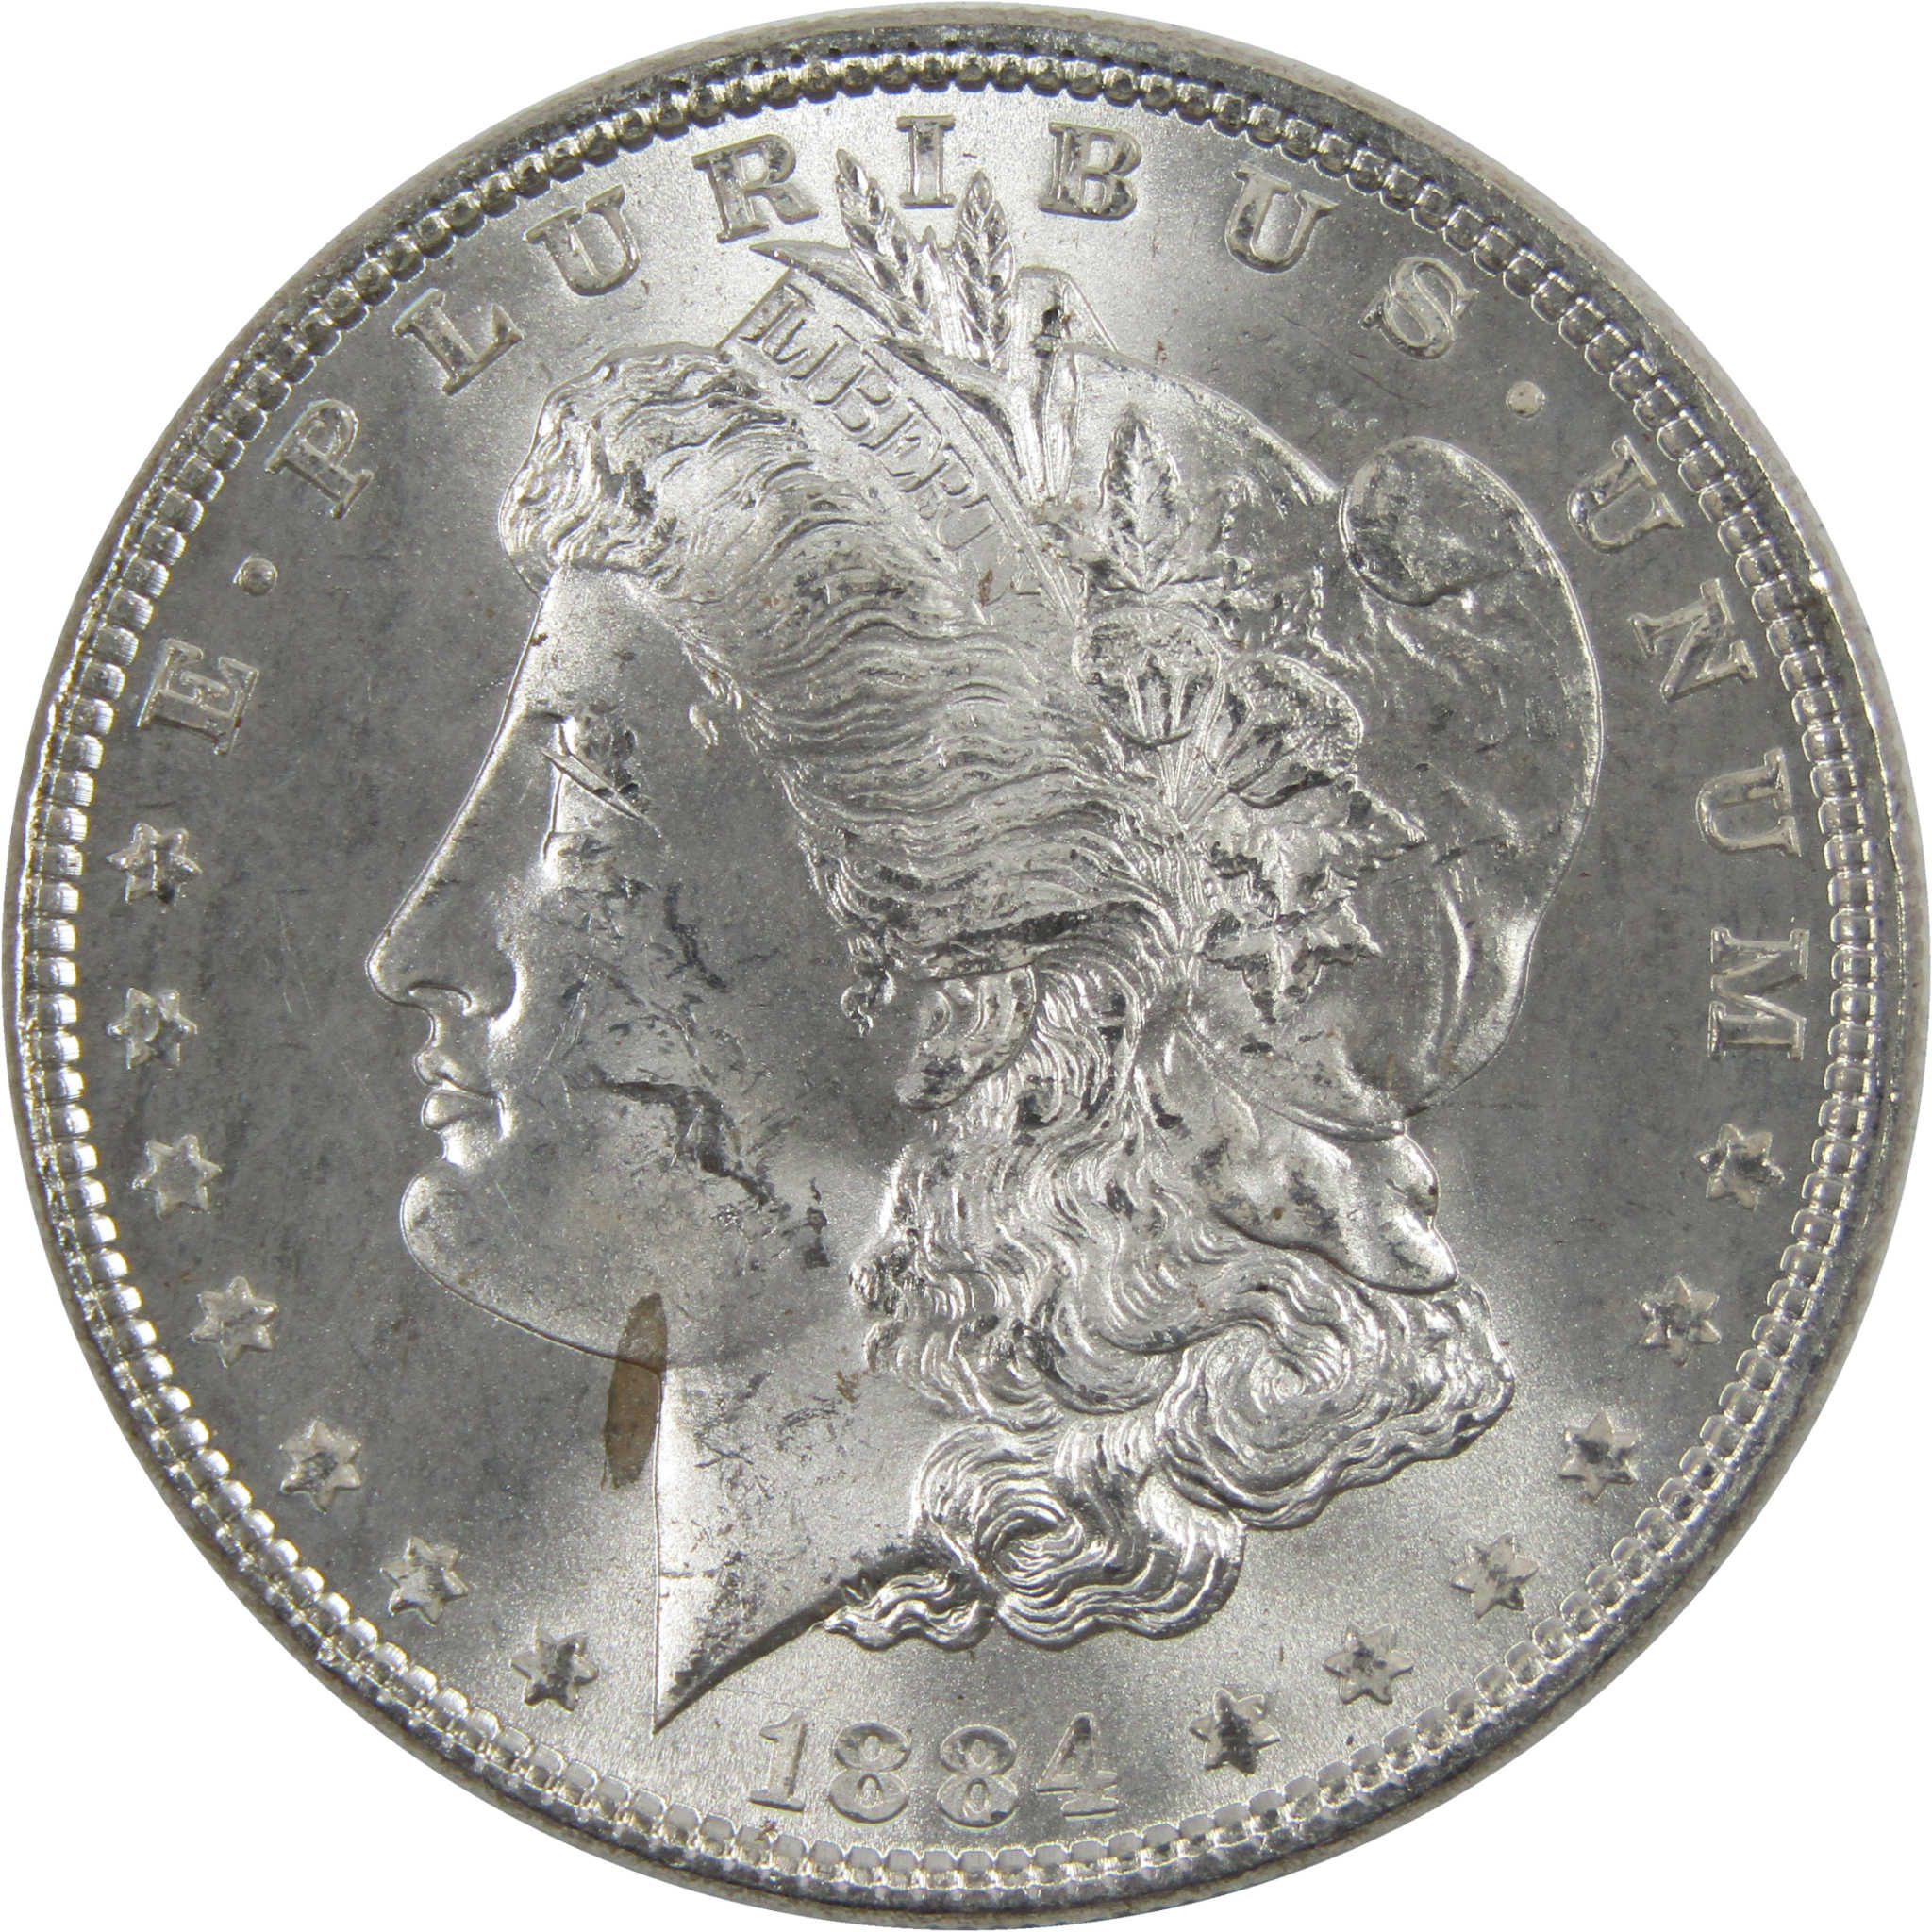 1884 Morgan Dollar BU Uncirculated 90% Silver $1 Coin SKU:I6026 - Morgan coin - Morgan silver dollar - Morgan silver dollar for sale - Profile Coins &amp; Collectibles